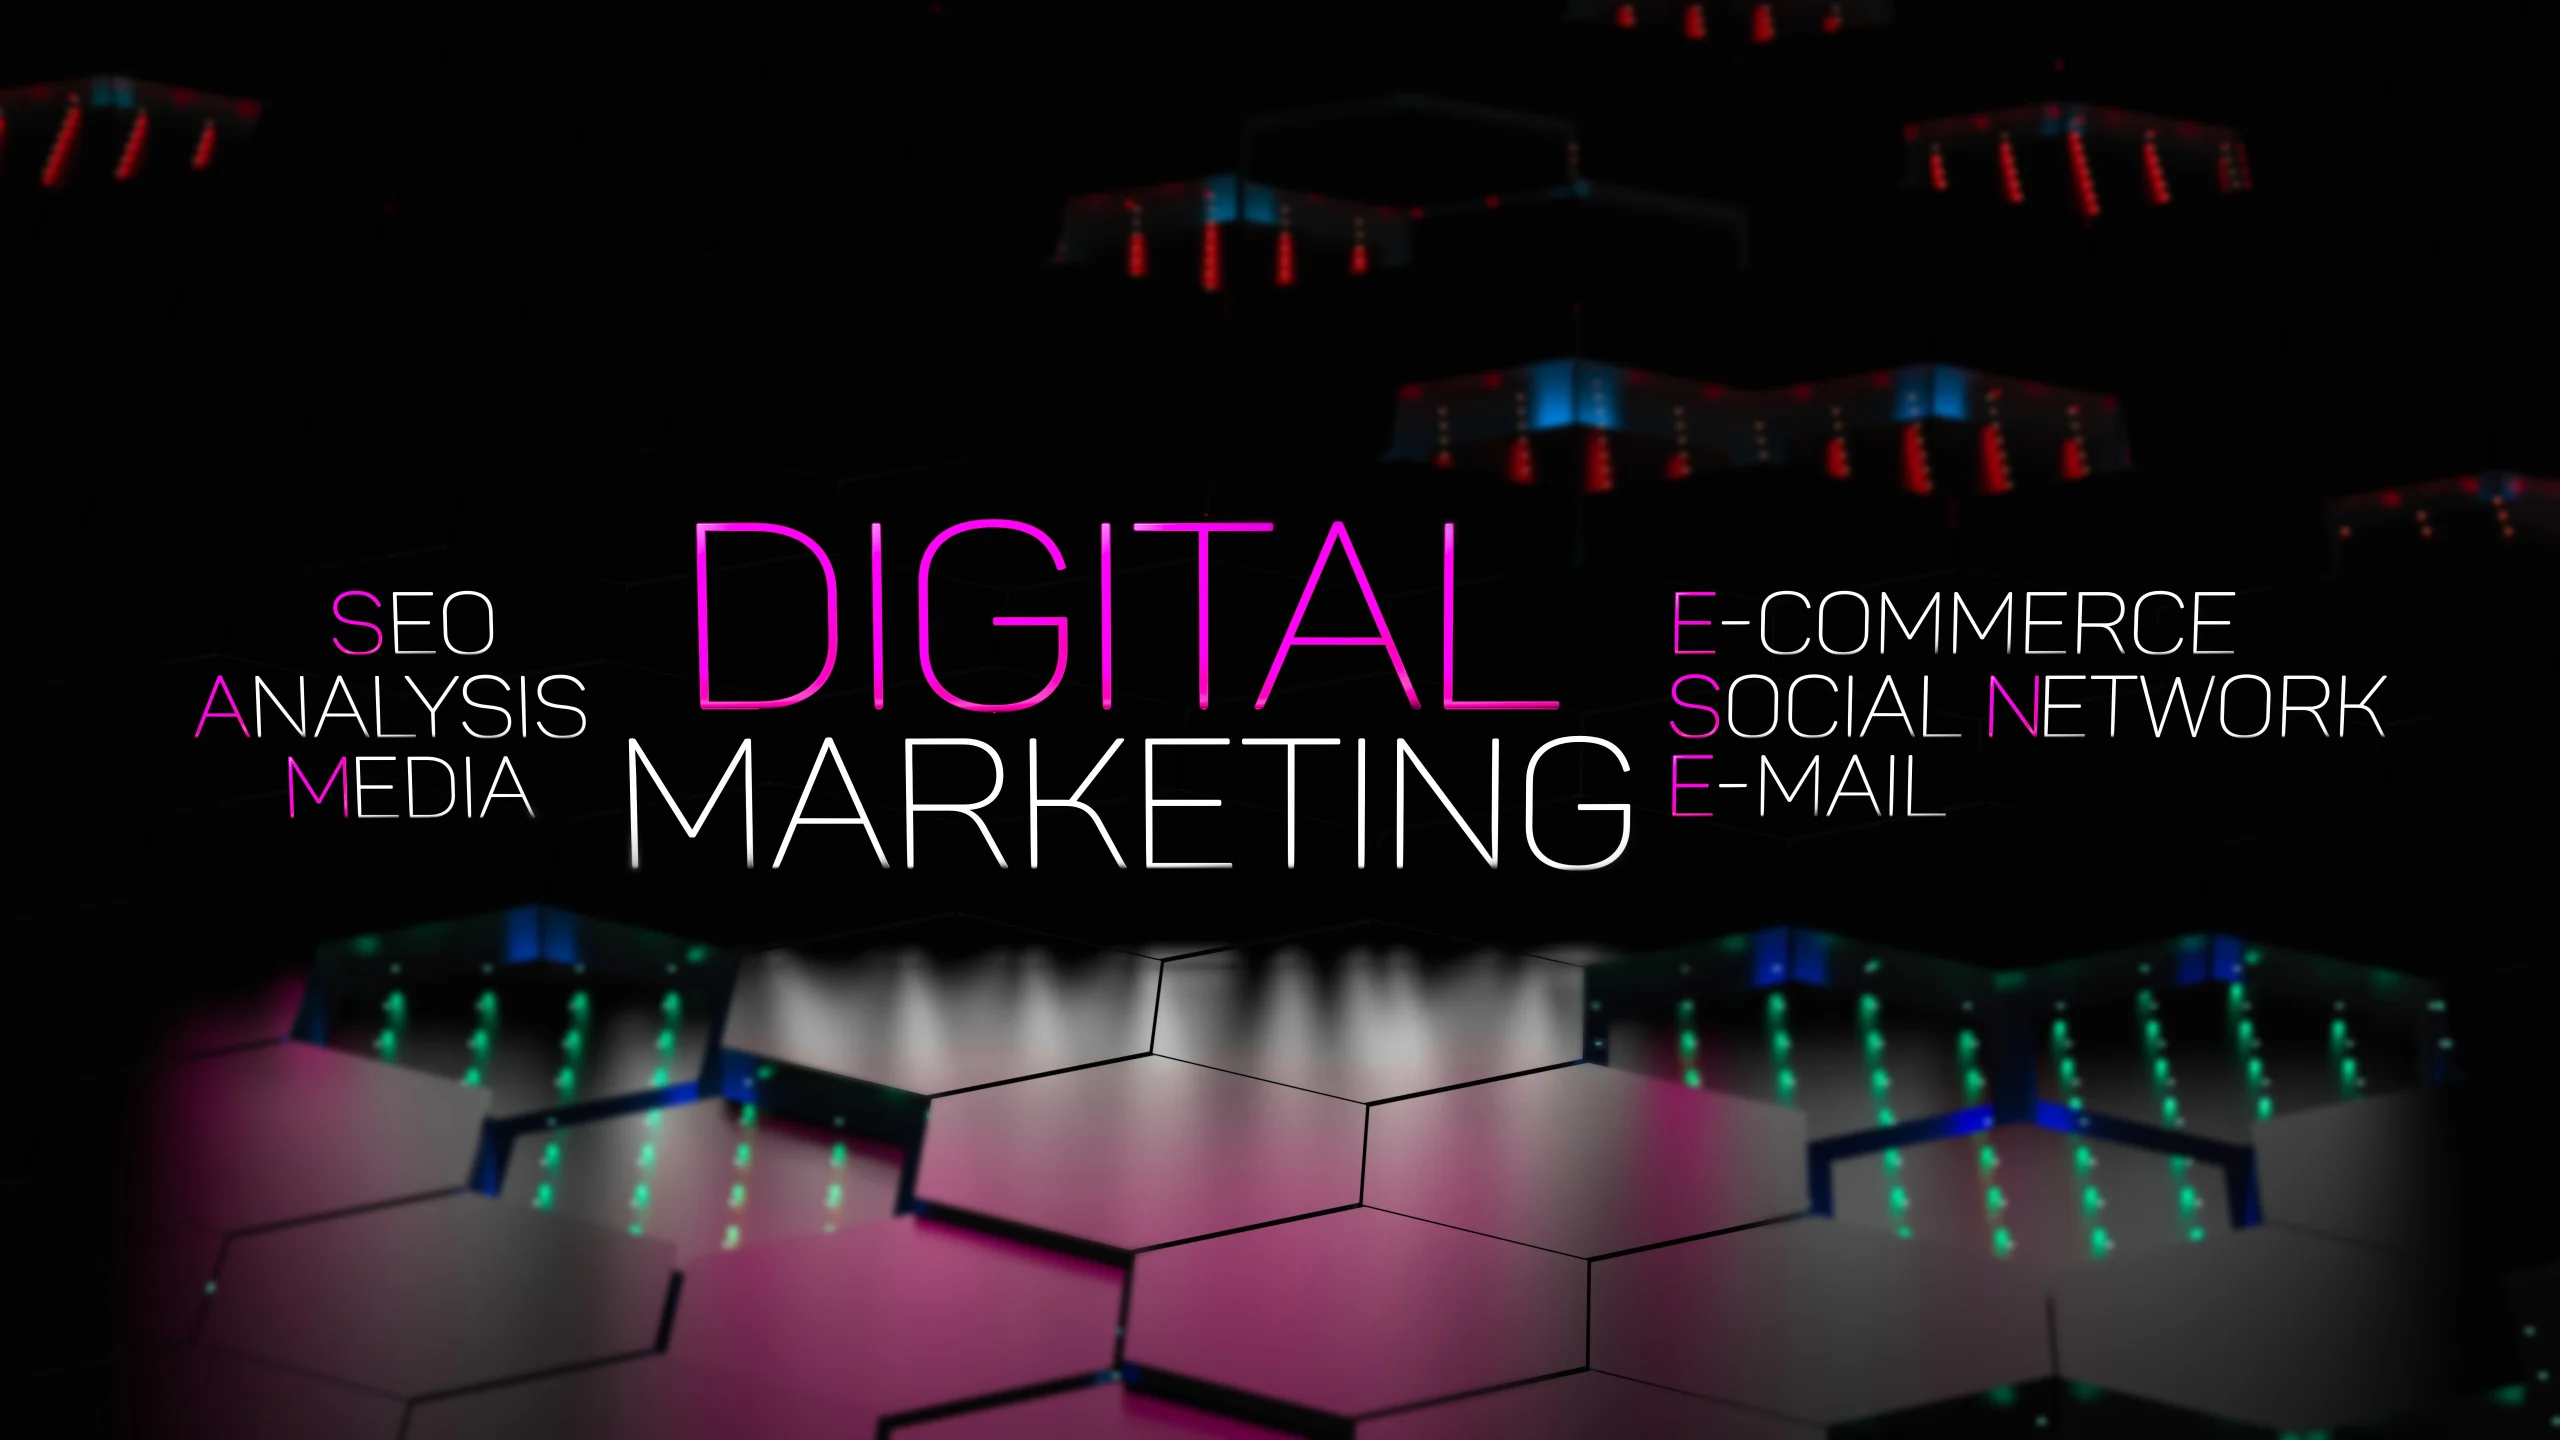 digital-marketing-concept-banner-3d-render